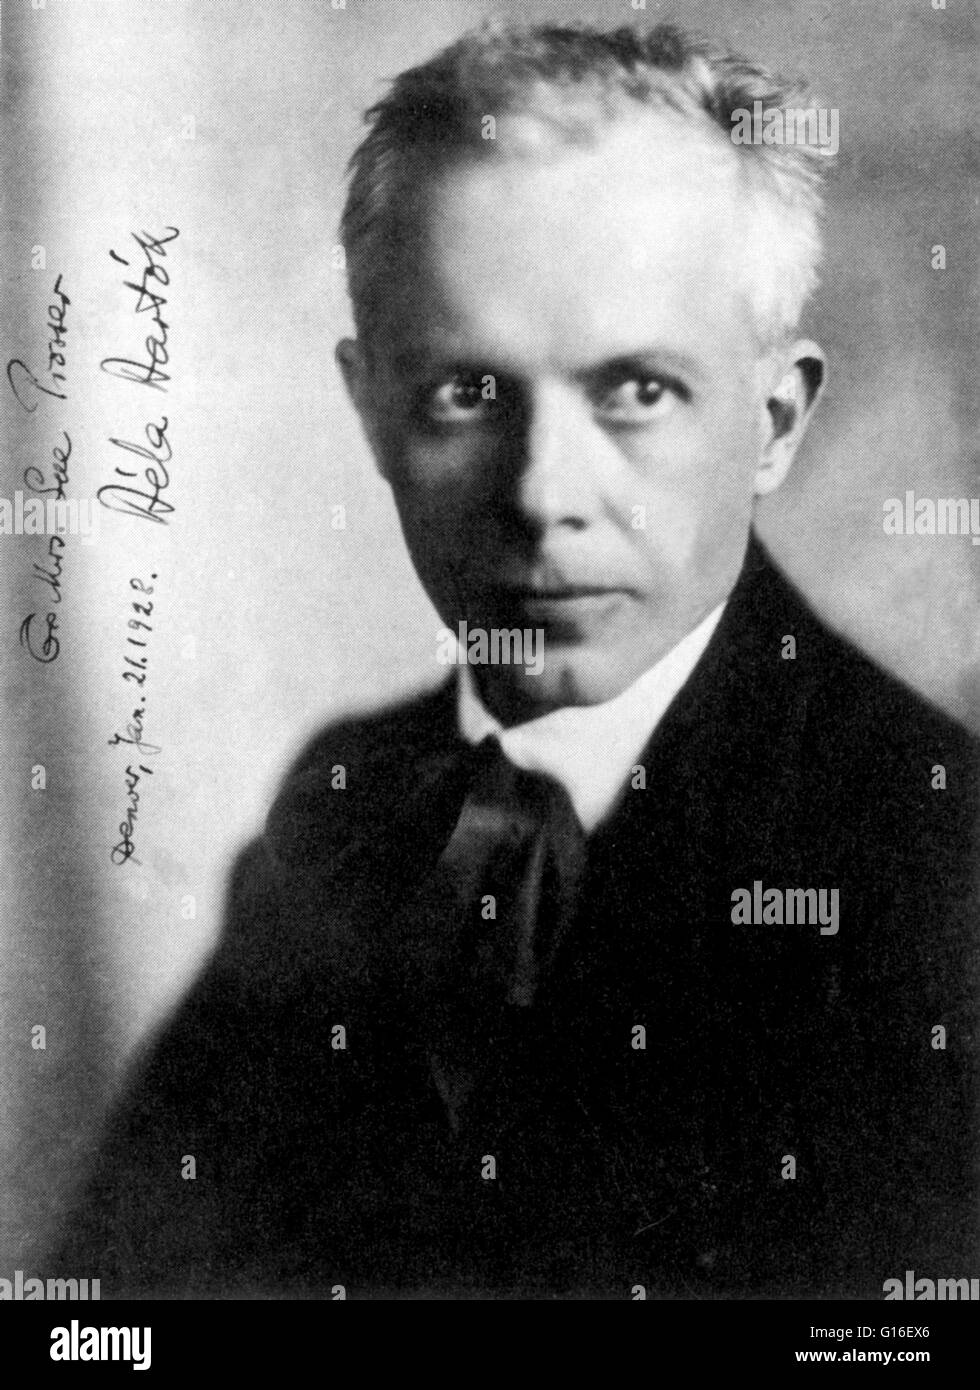 Béla Viktor János Bartók (25. März 1881 - 26. September 1945) war ein ungarischer Komponist und Pianist. Er gilt als einer der wichtigsten Komponisten des 20. Jahrhunderts. Durch seine Sammlung und analytische Studie der Volksmusik war er eines der fou Stockfoto